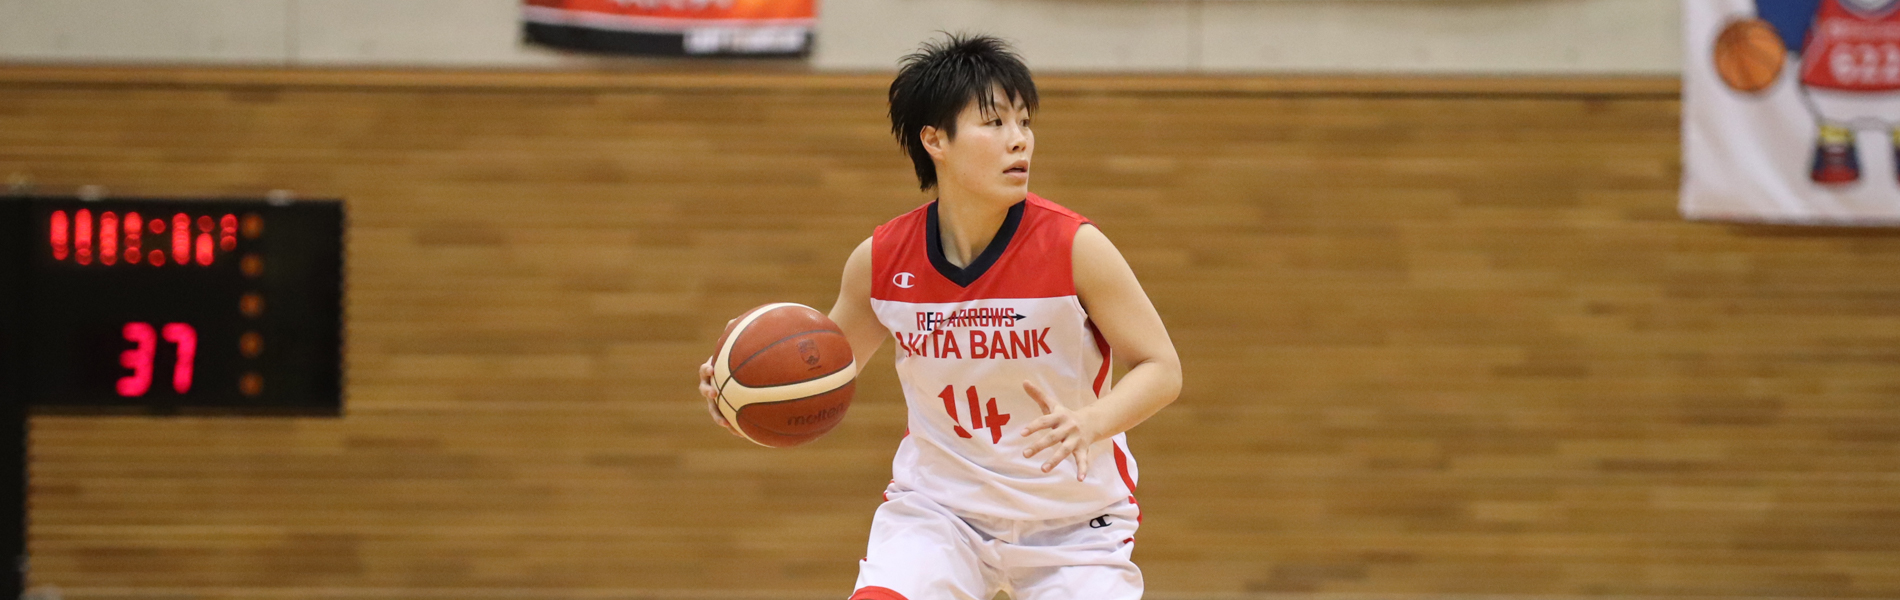 一般社団法人日本社会人バスケットボール連盟 一般社団法人日本社会人バスケットボール連盟